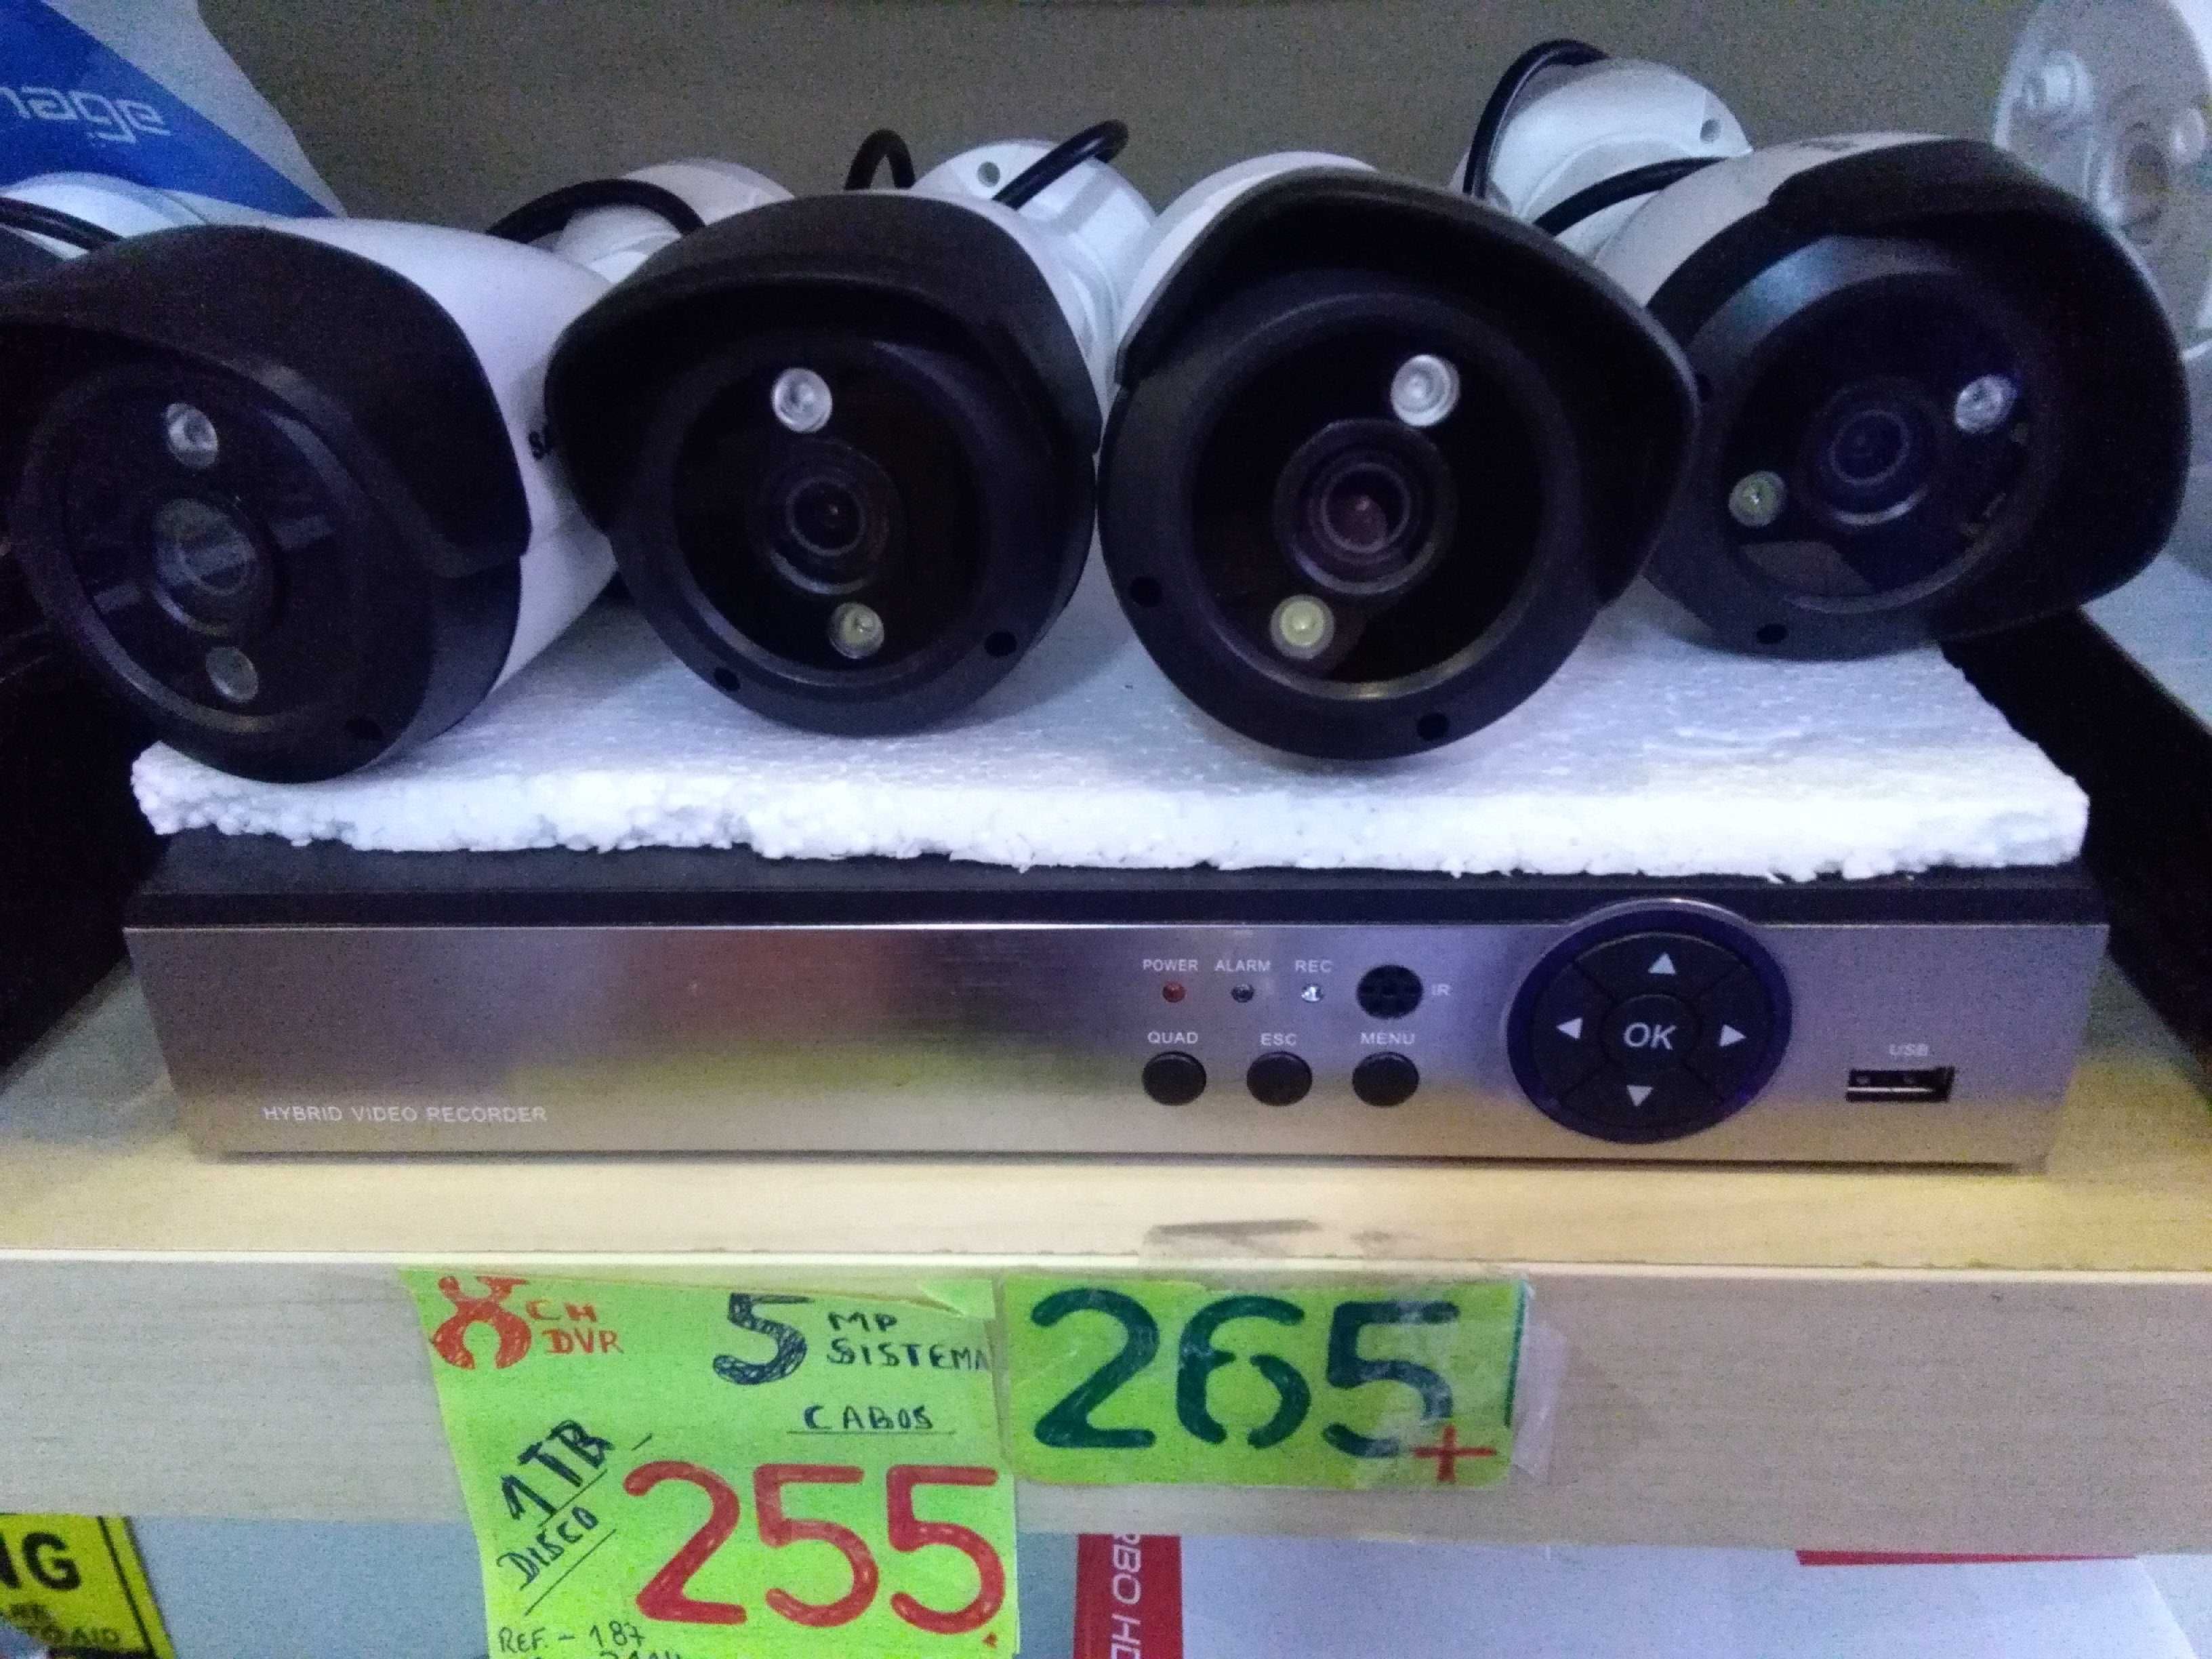 Videovigilancia kit de DVR 4ch  e 4 camaras  de 5Mpx, cabos